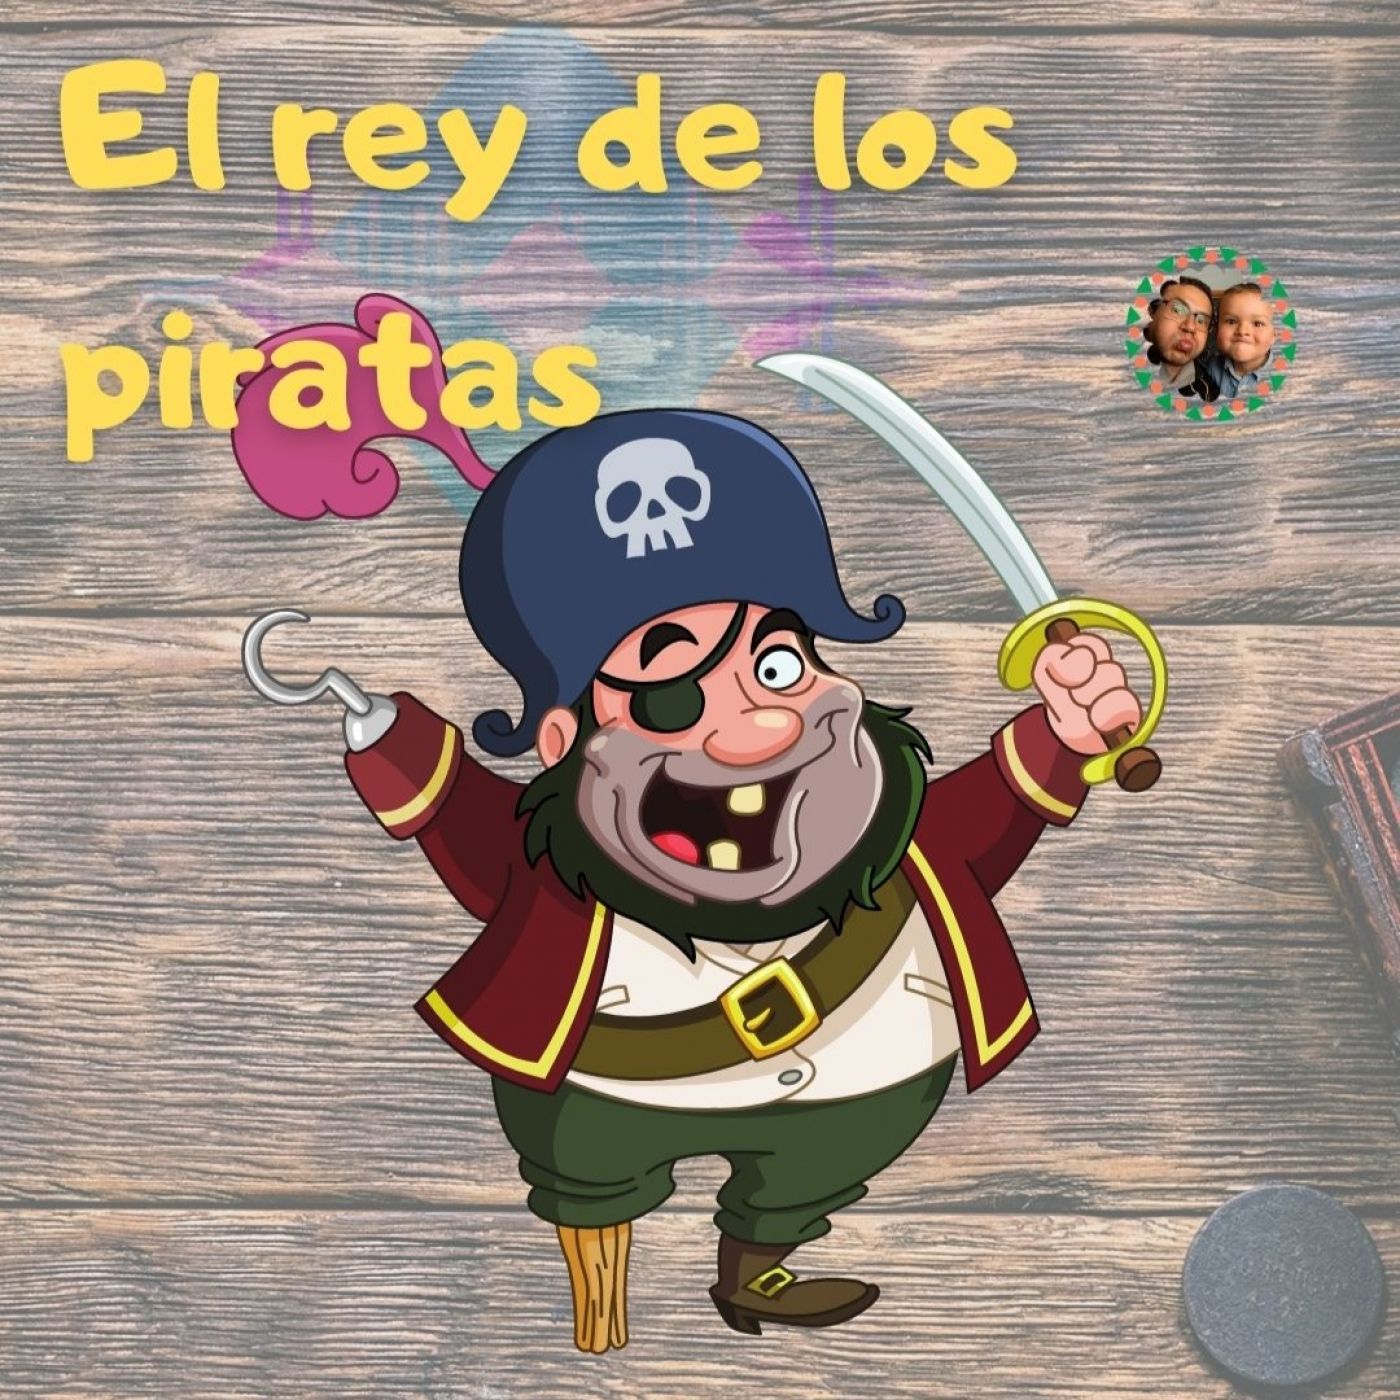 El rey de los piratas